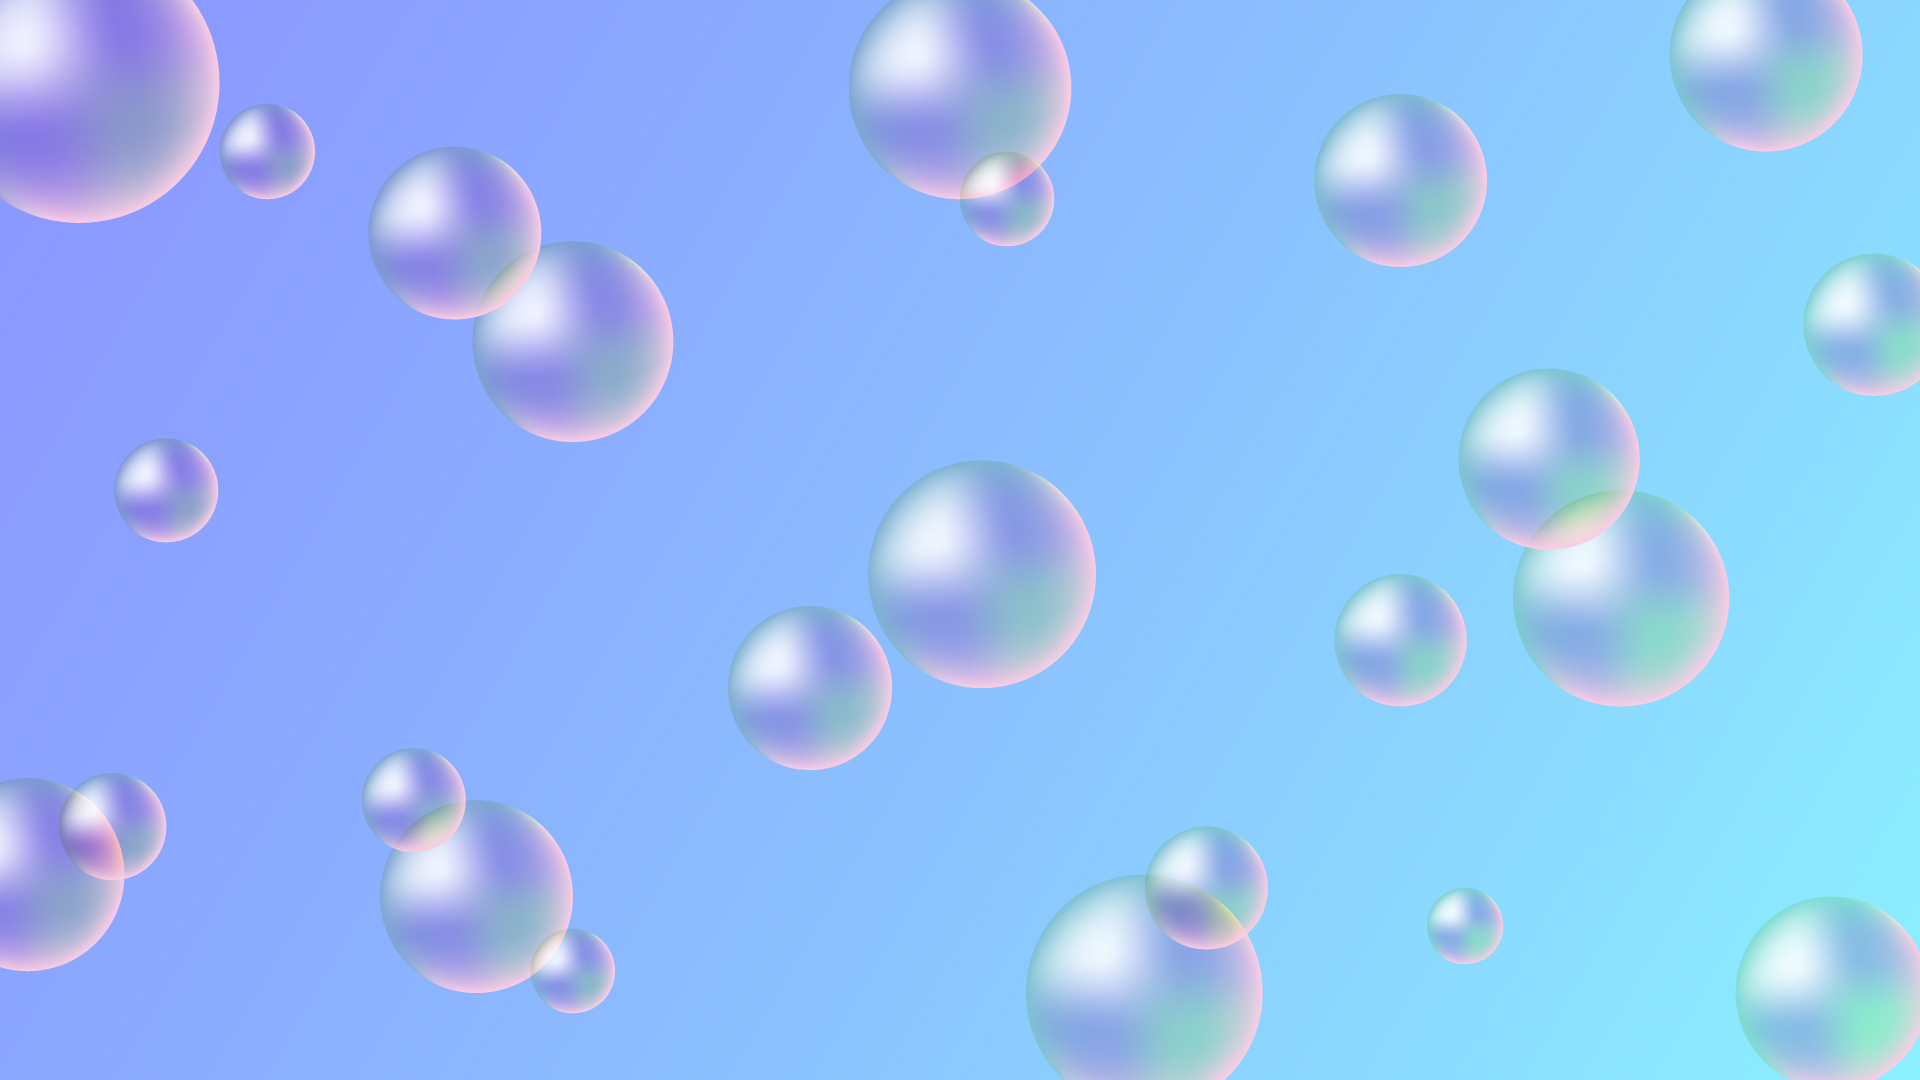 シャボン玉・バブルの壁紙・背景素材 1,920px×1,080px